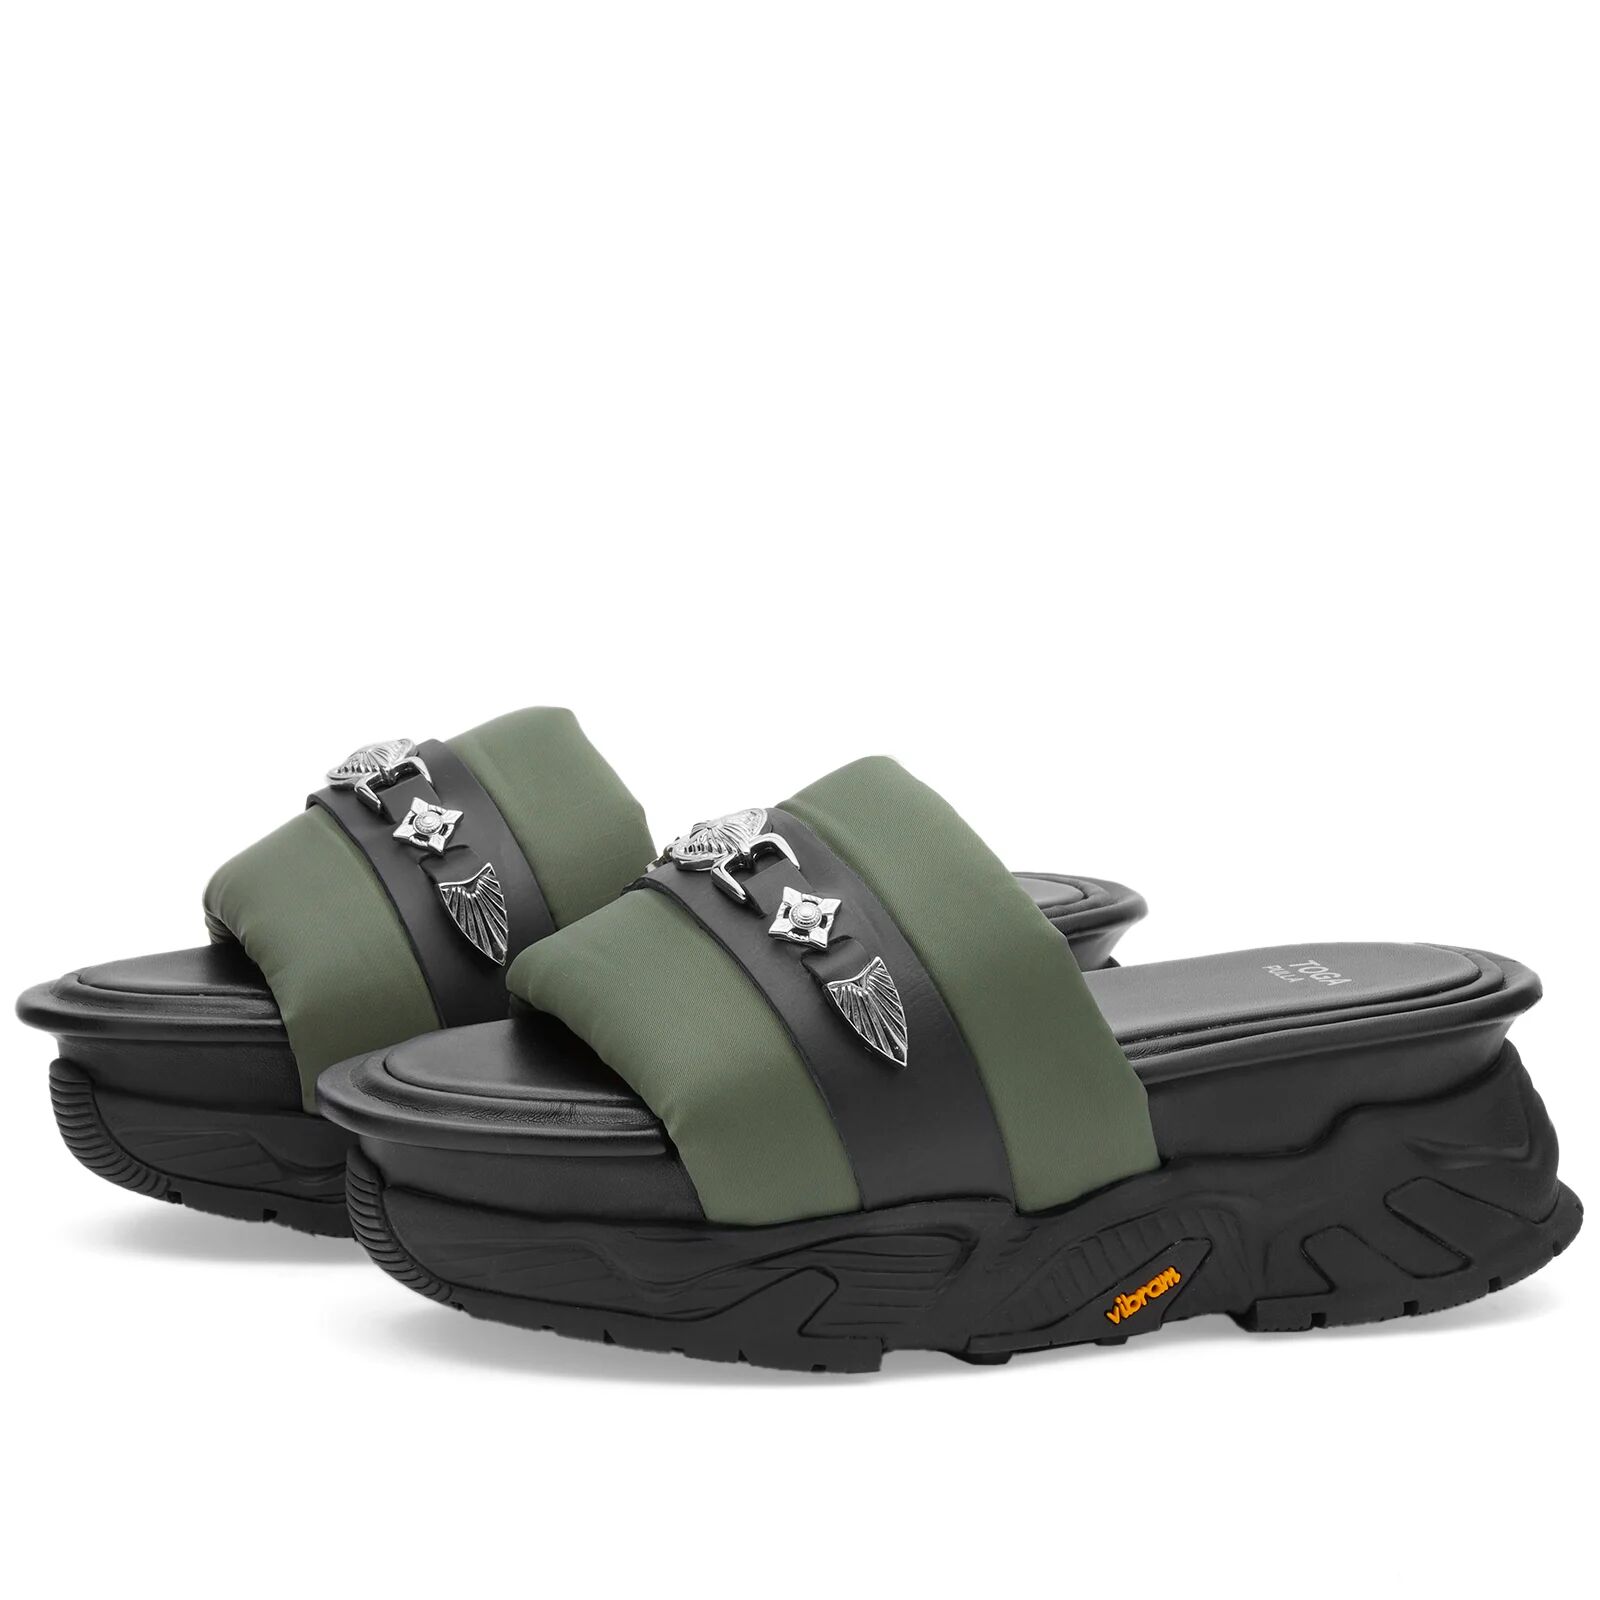 Toga Pulla Women's Platform Slider Sandals in Green, Size UK 7